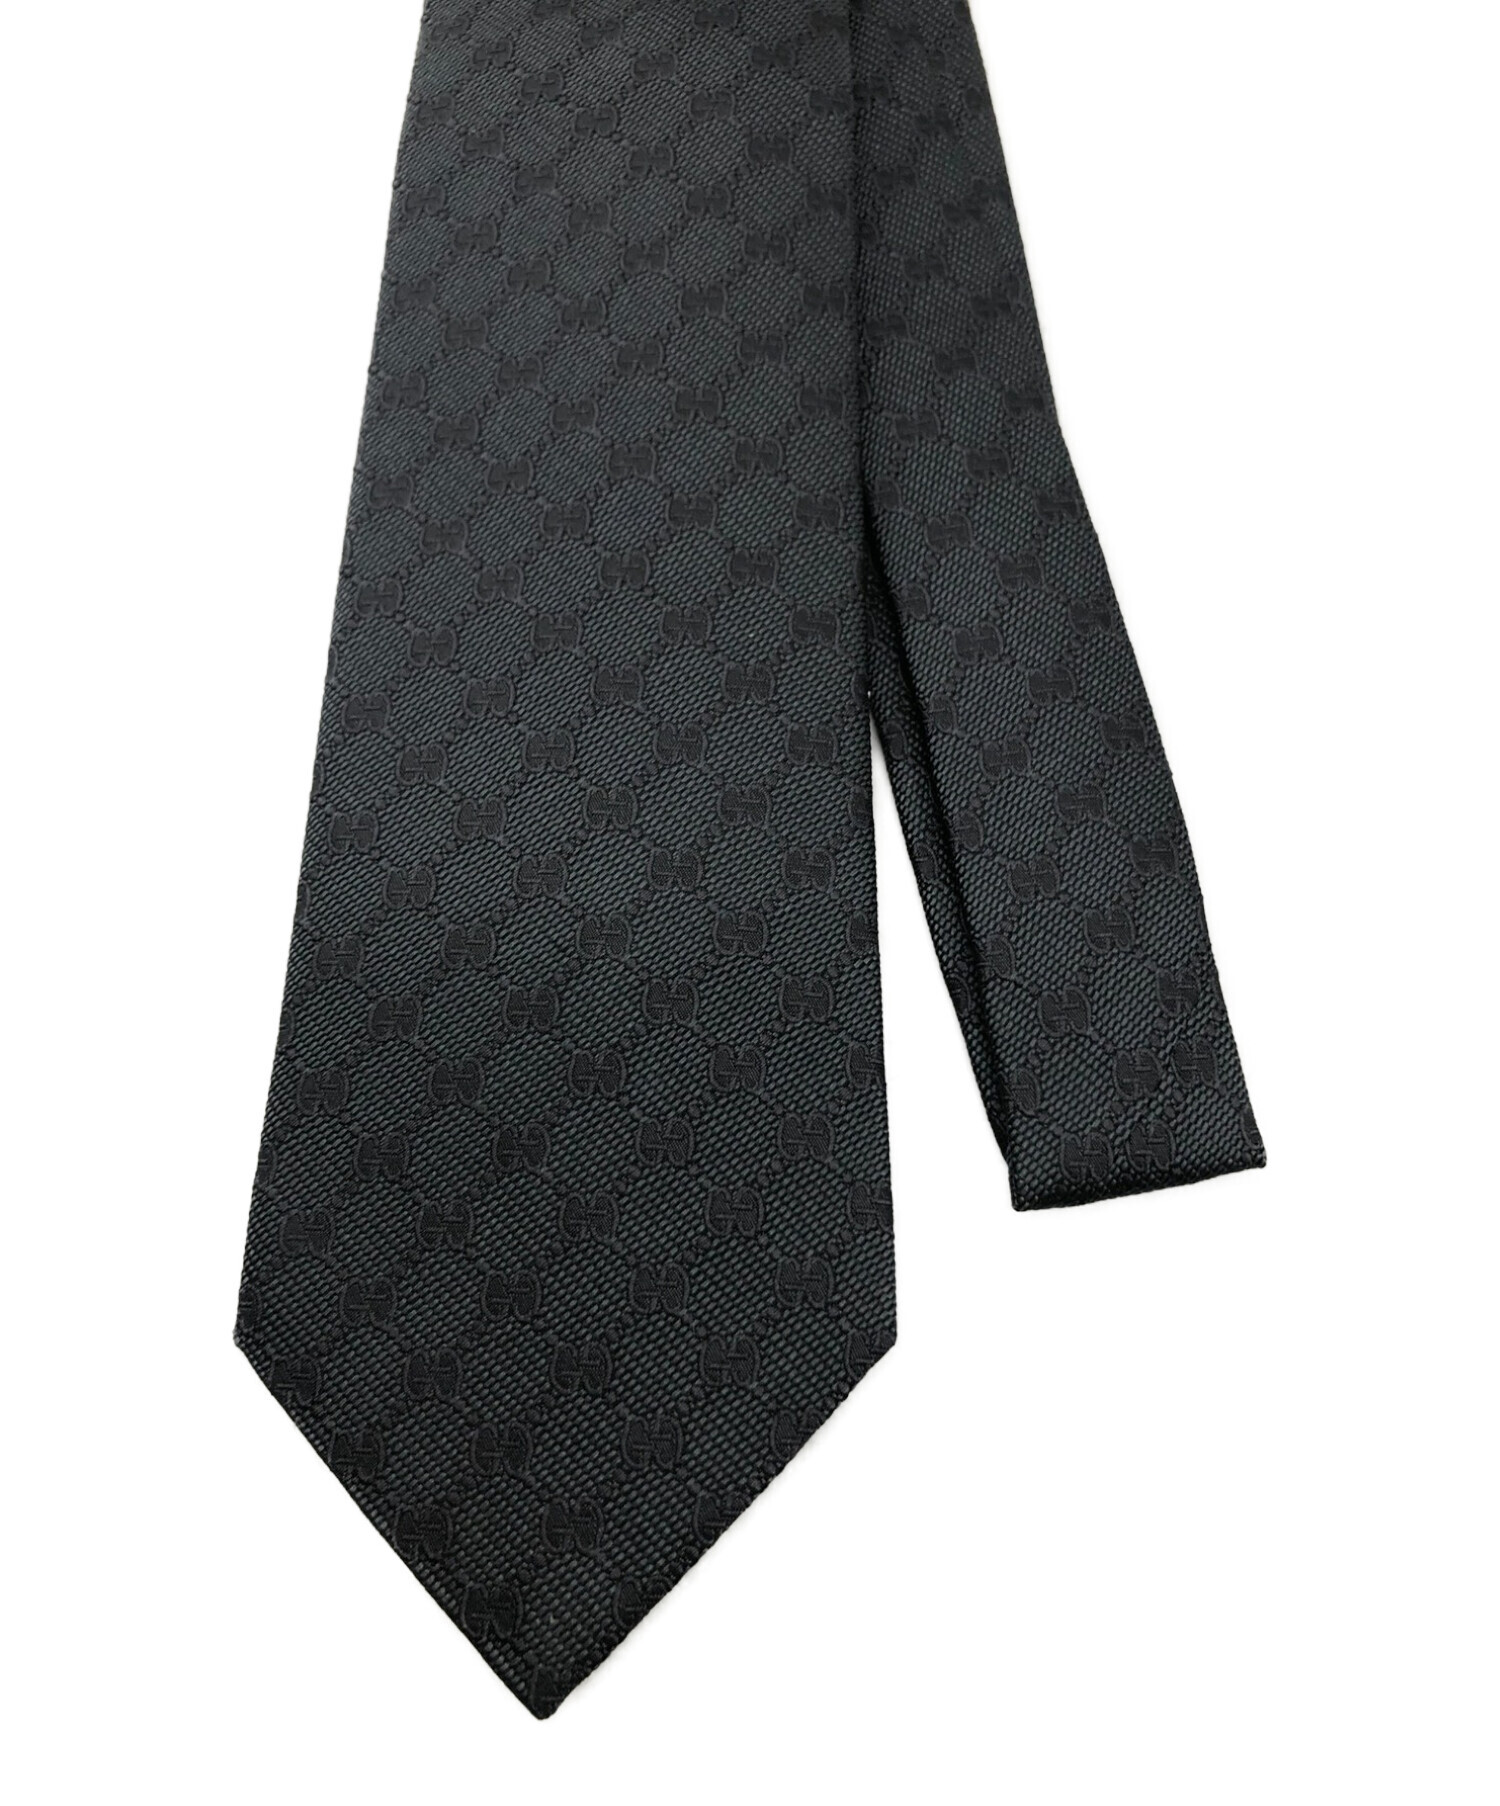 GUCCI (グッチ) ネクタイ ブラック サイズ:無し 未使用品